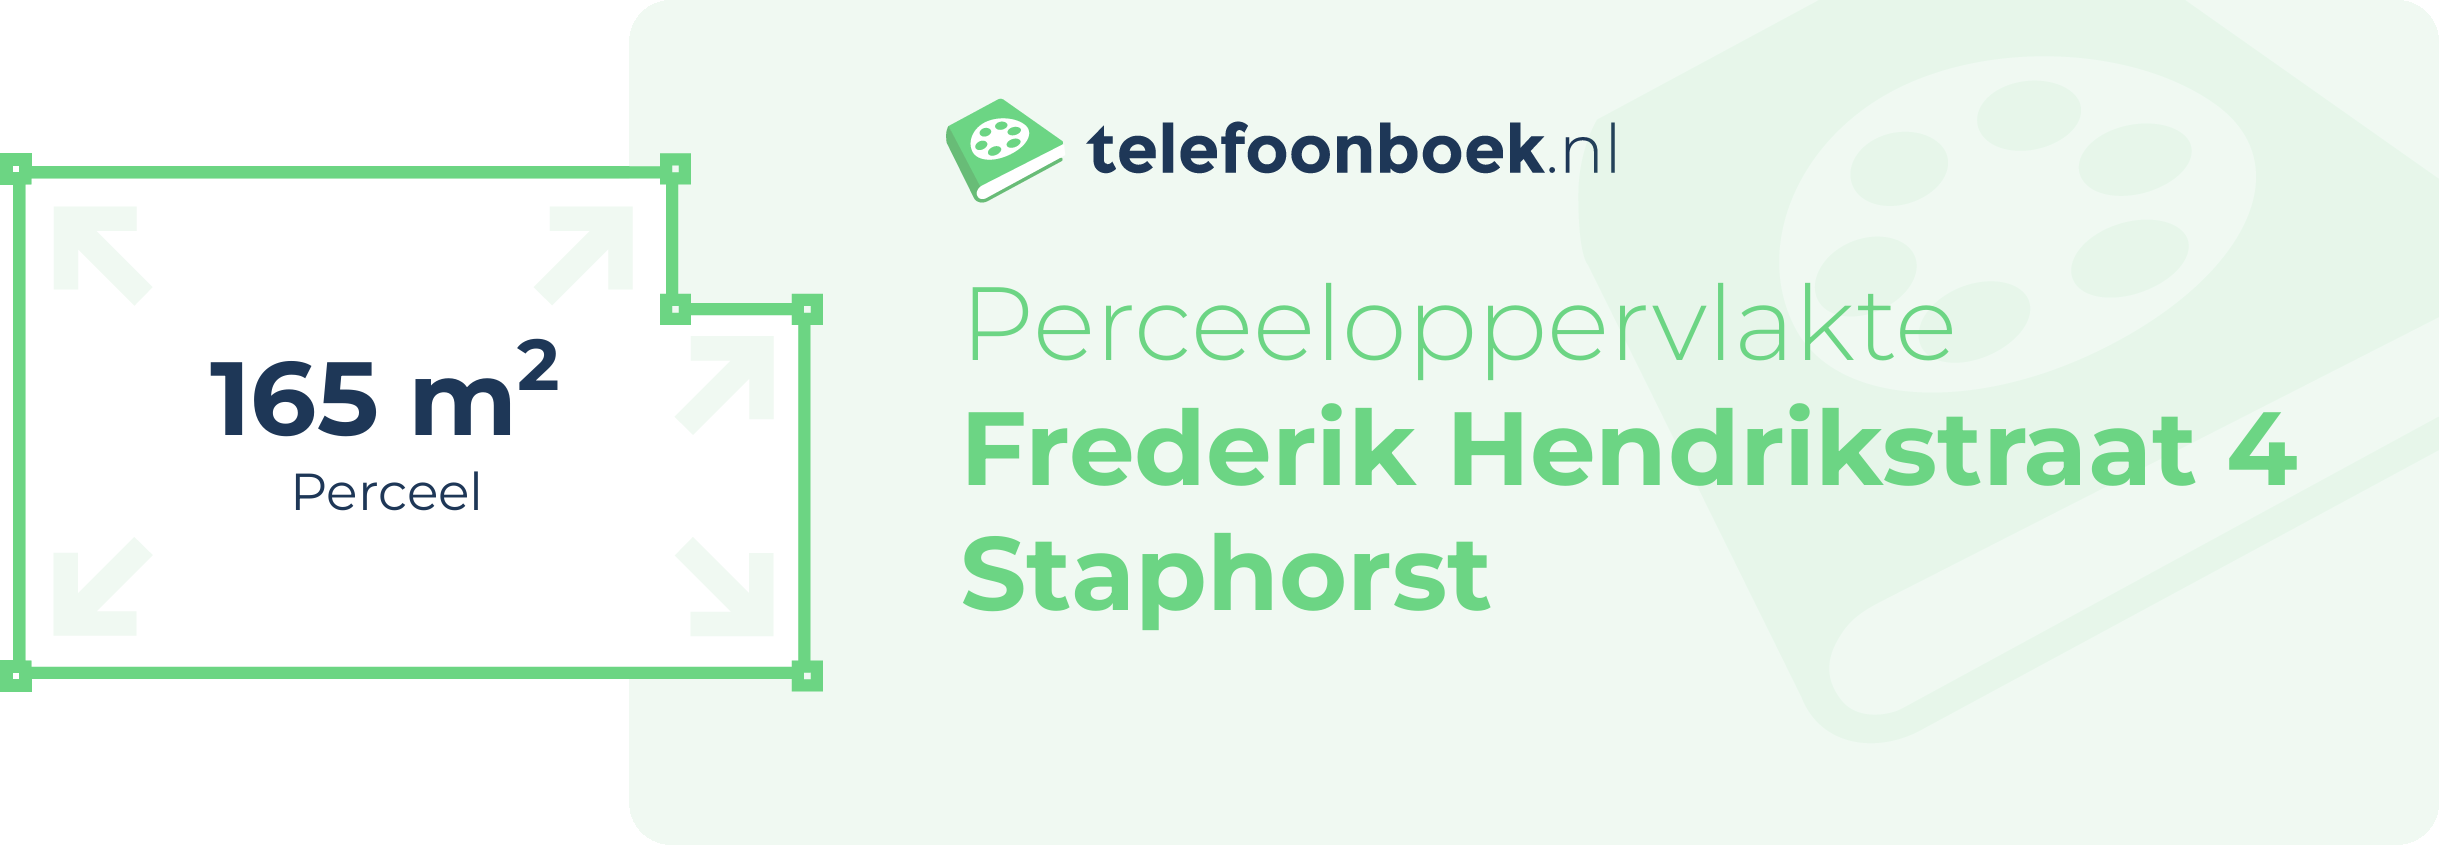 Perceeloppervlakte Frederik Hendrikstraat 4 Staphorst